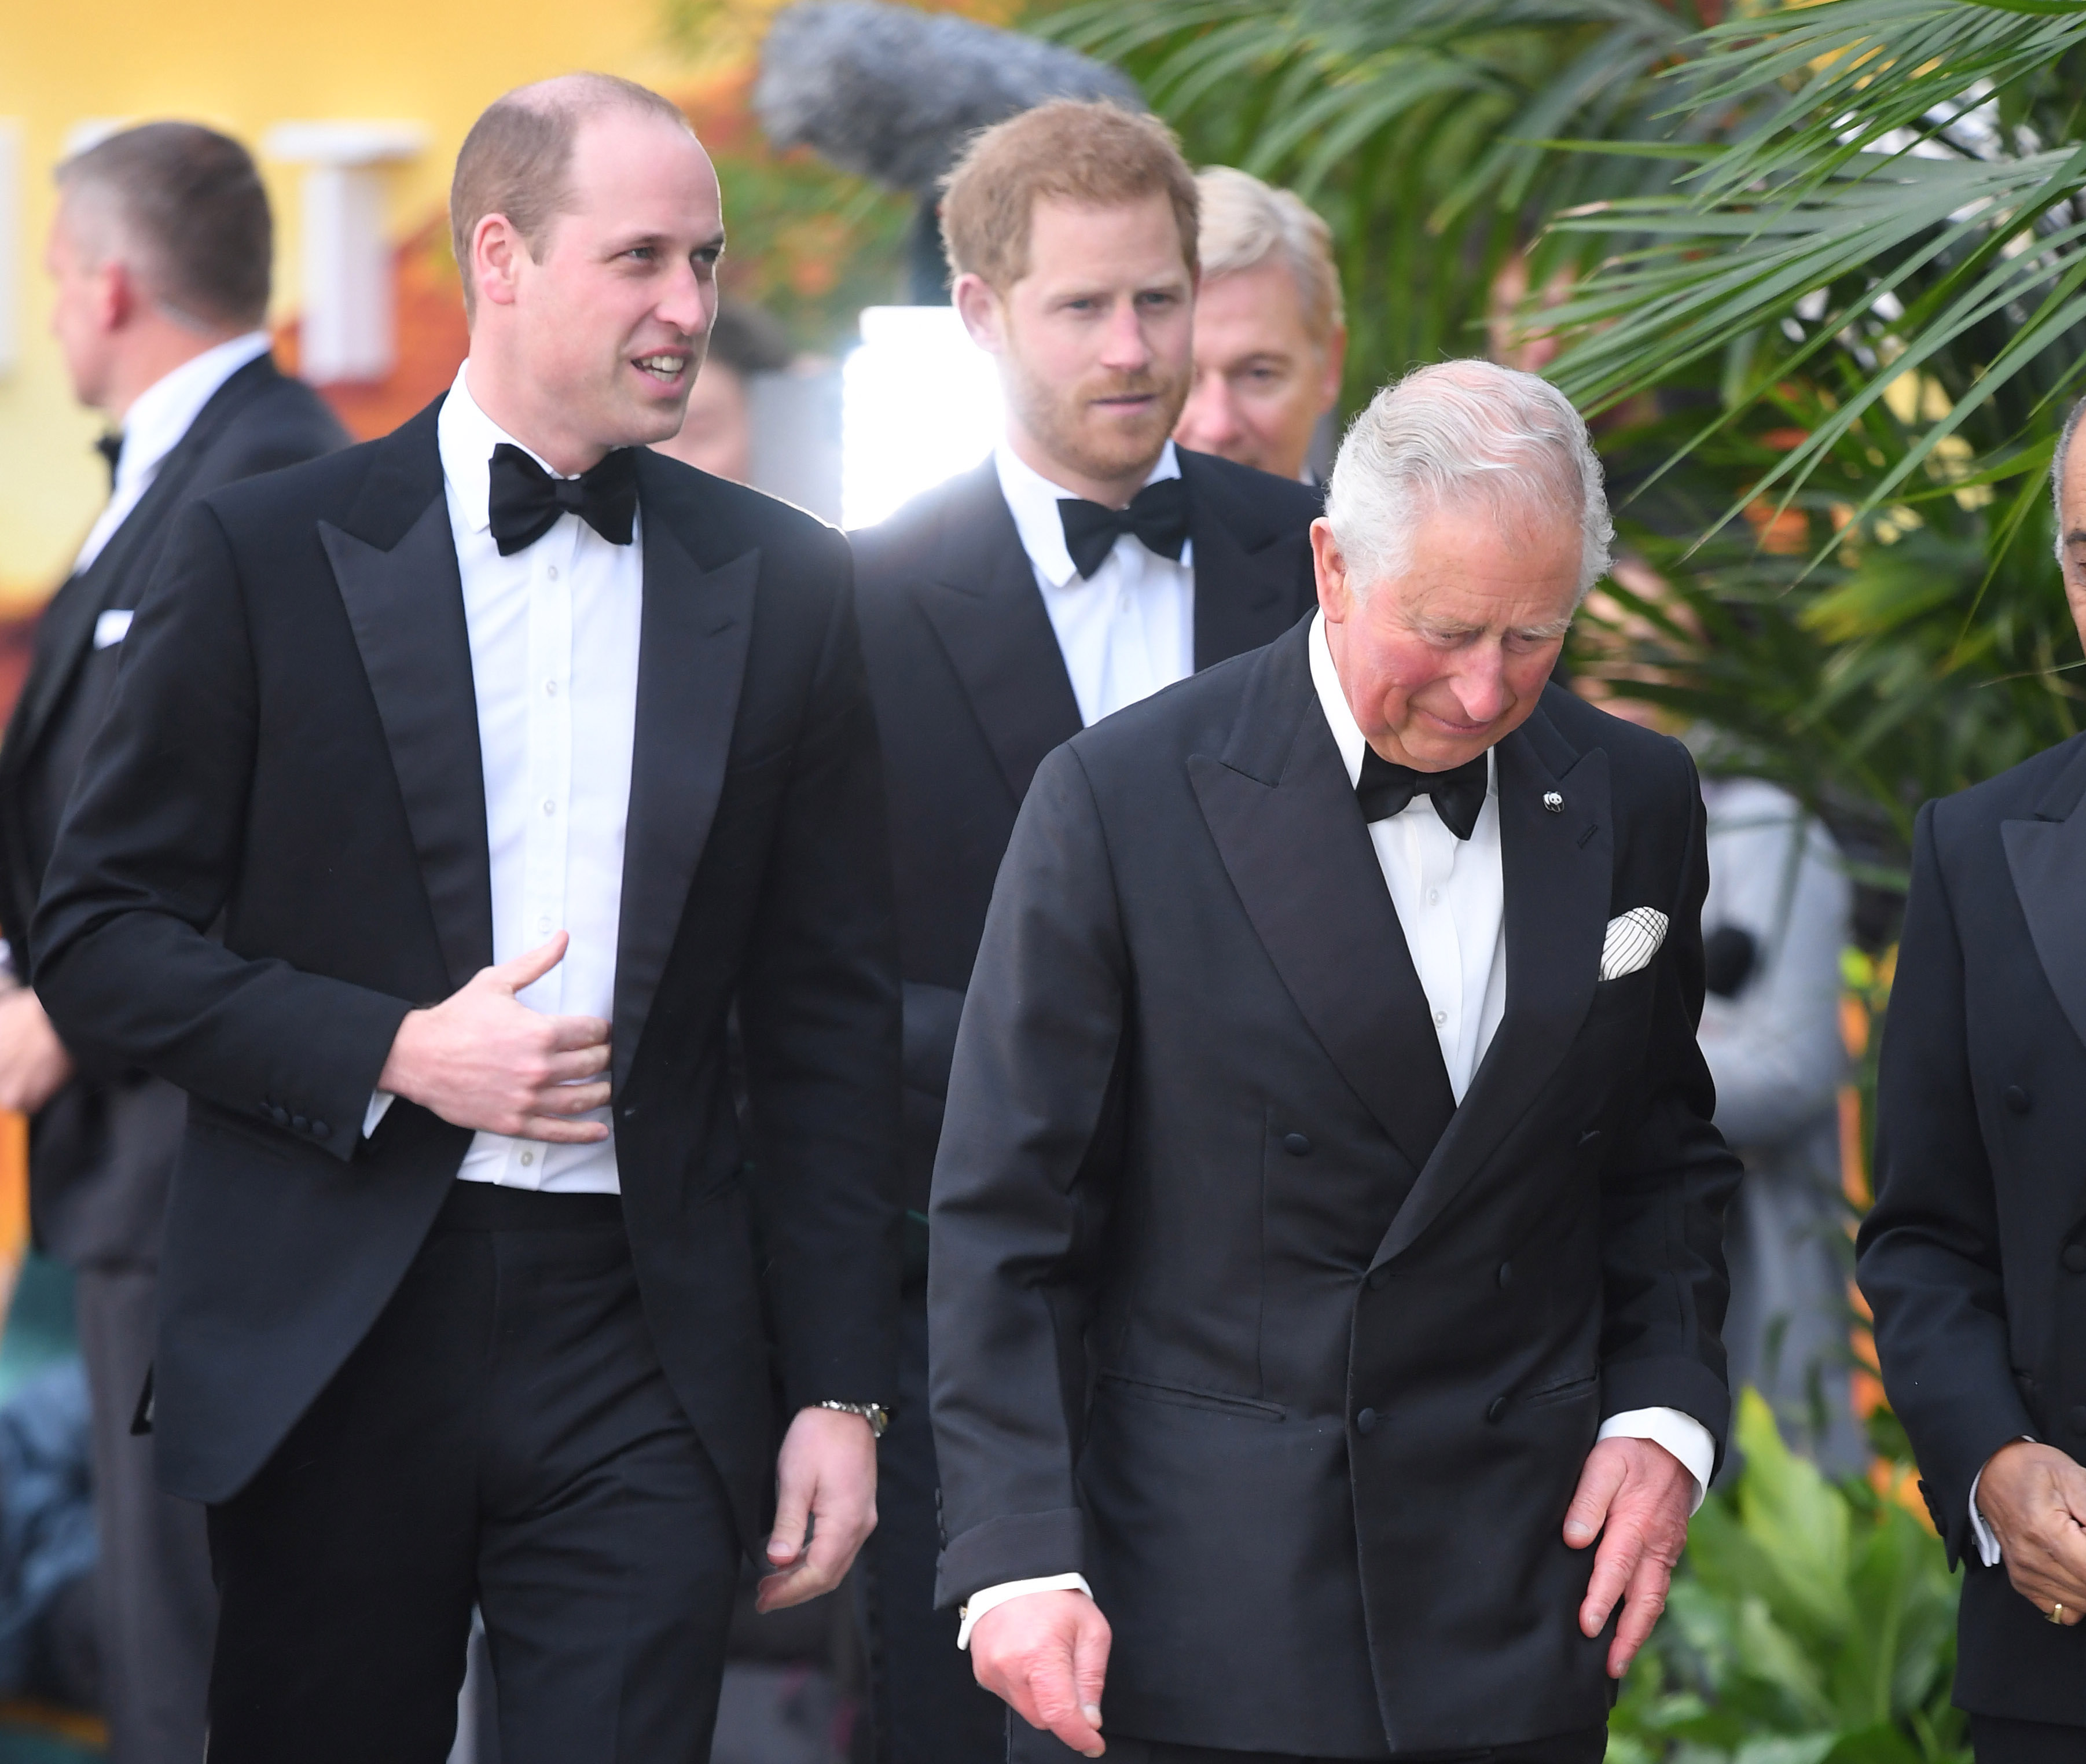 Le prince William, le prince Harry et le roi Charles assistent à la première de "Notre planète" le 04 avril 2019 à Londres, en Angleterre | Source : Getty Images